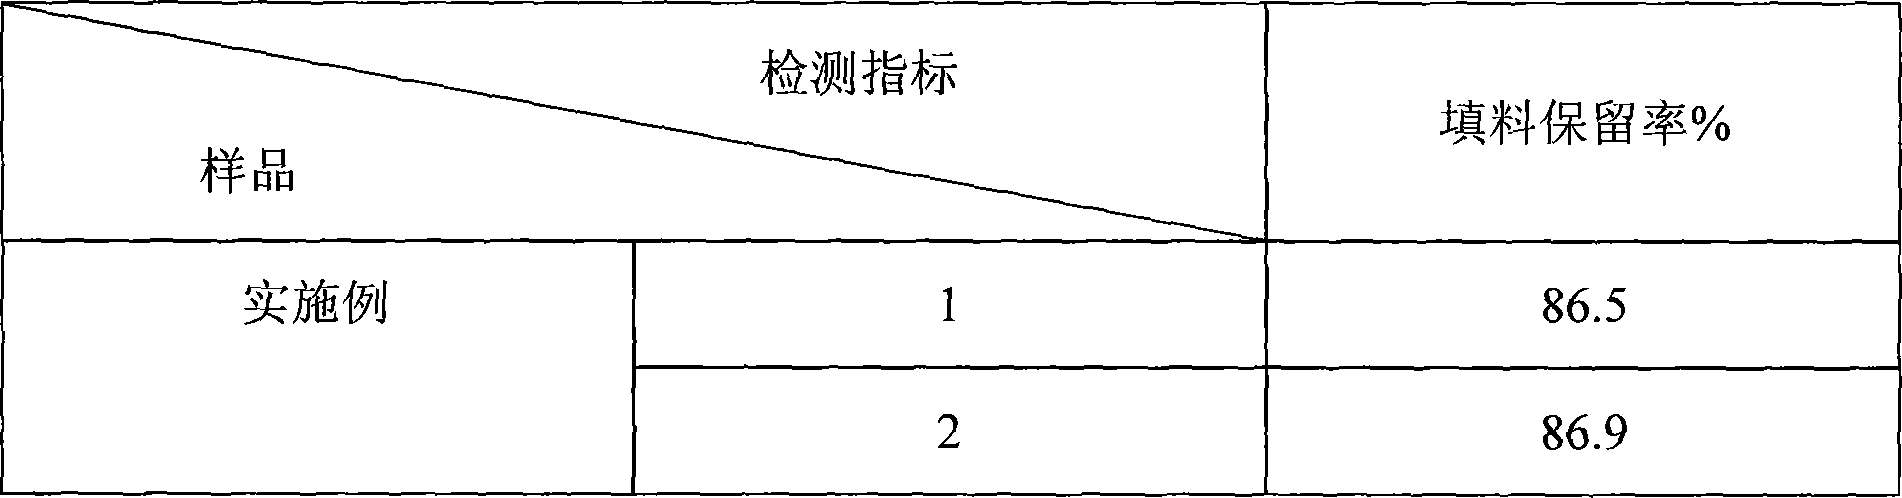 Method for manufacturing rice-shaped precipitated calcium carbonate